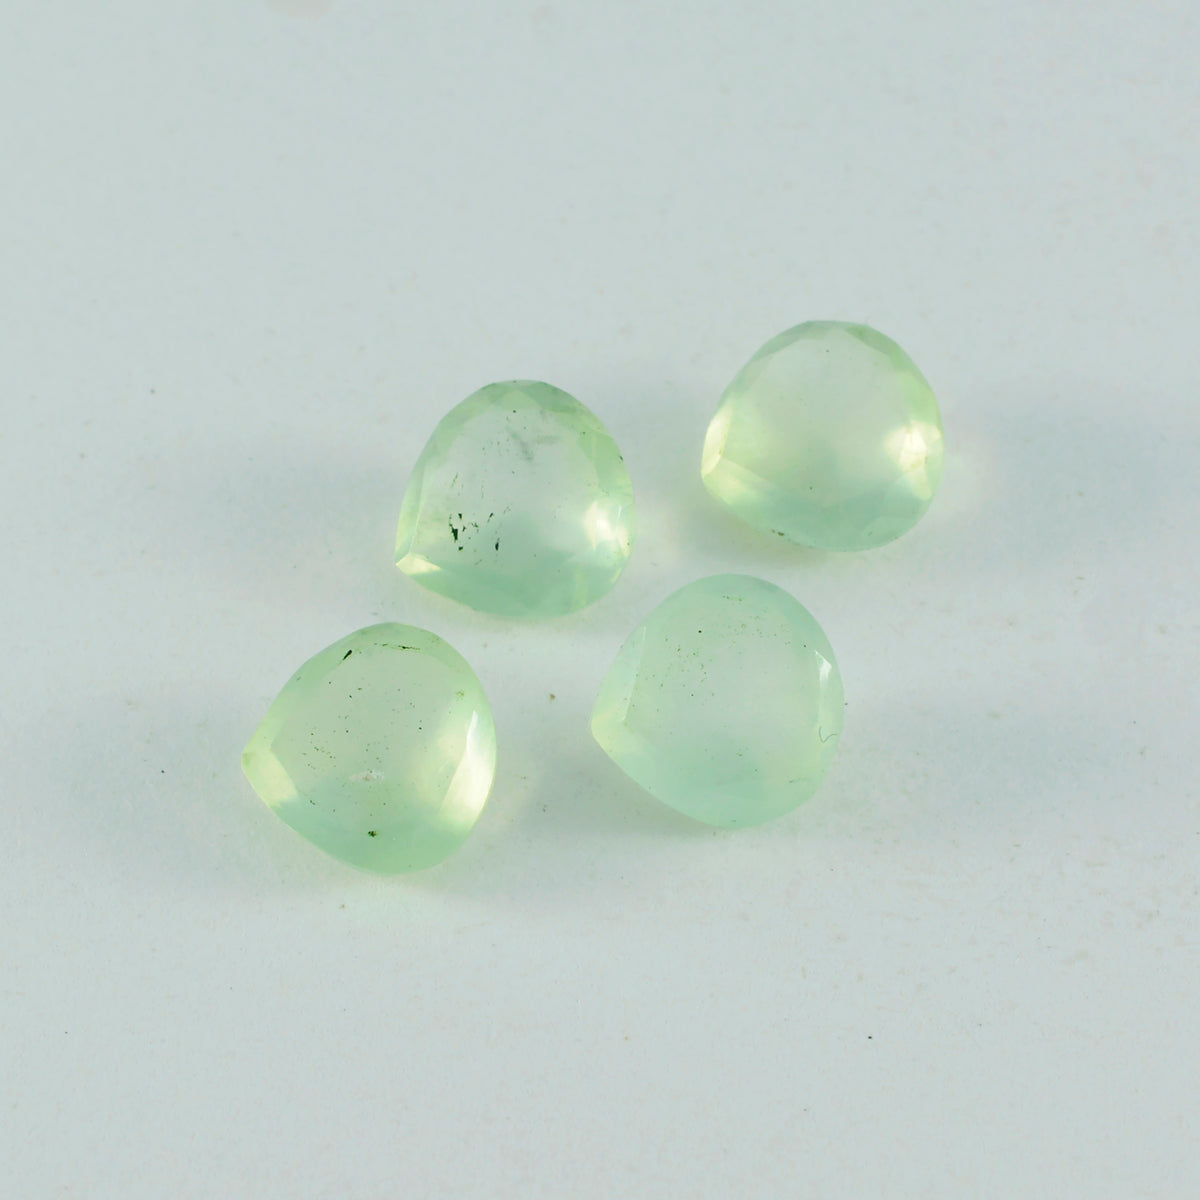 riyogems 1шт зеленый пренит ограненный 8x8 мм драгоценный камень в форме сердца удивительного качества